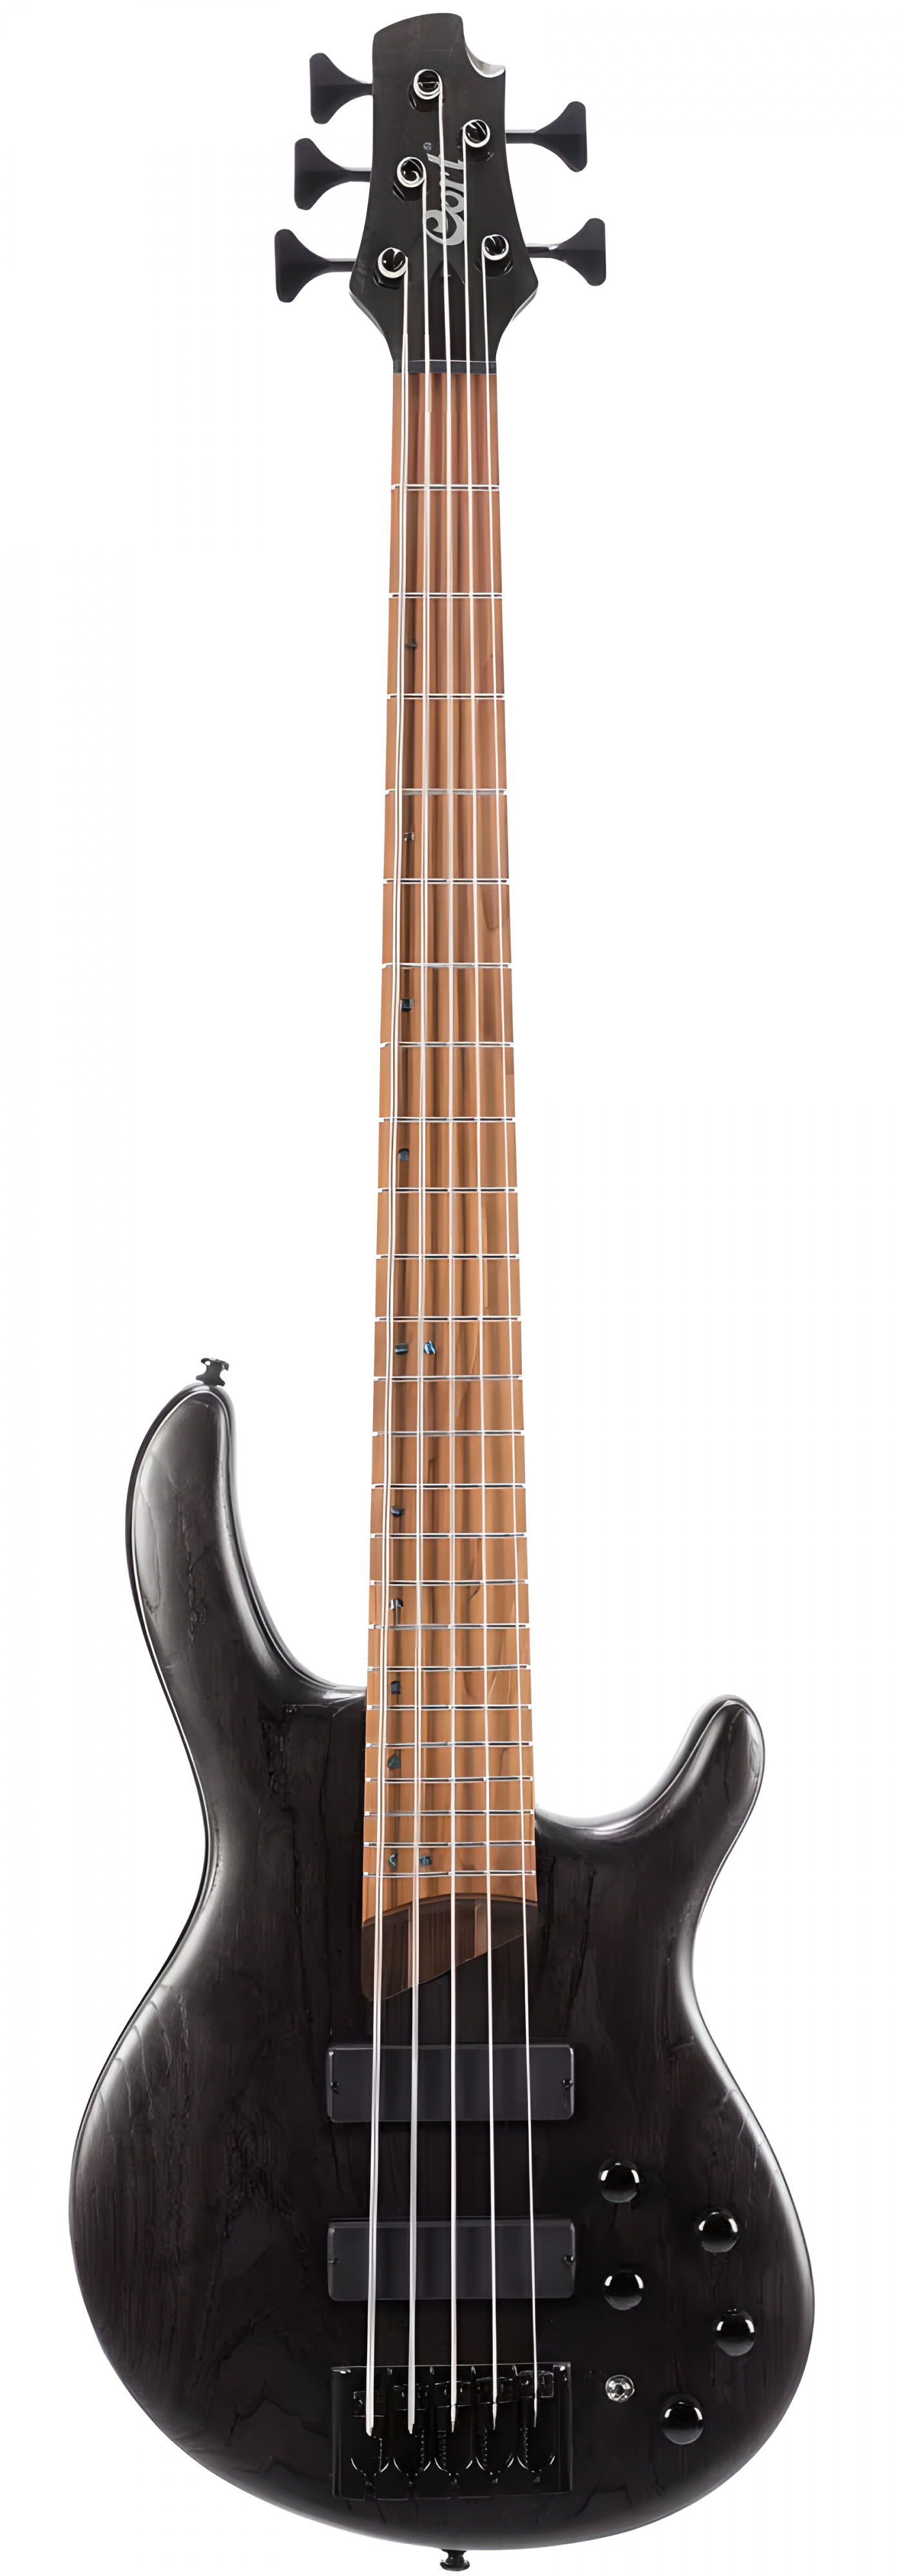 Бас-гитары Cort B5-Element-OPTB линейка измеритель высоты струн порожков